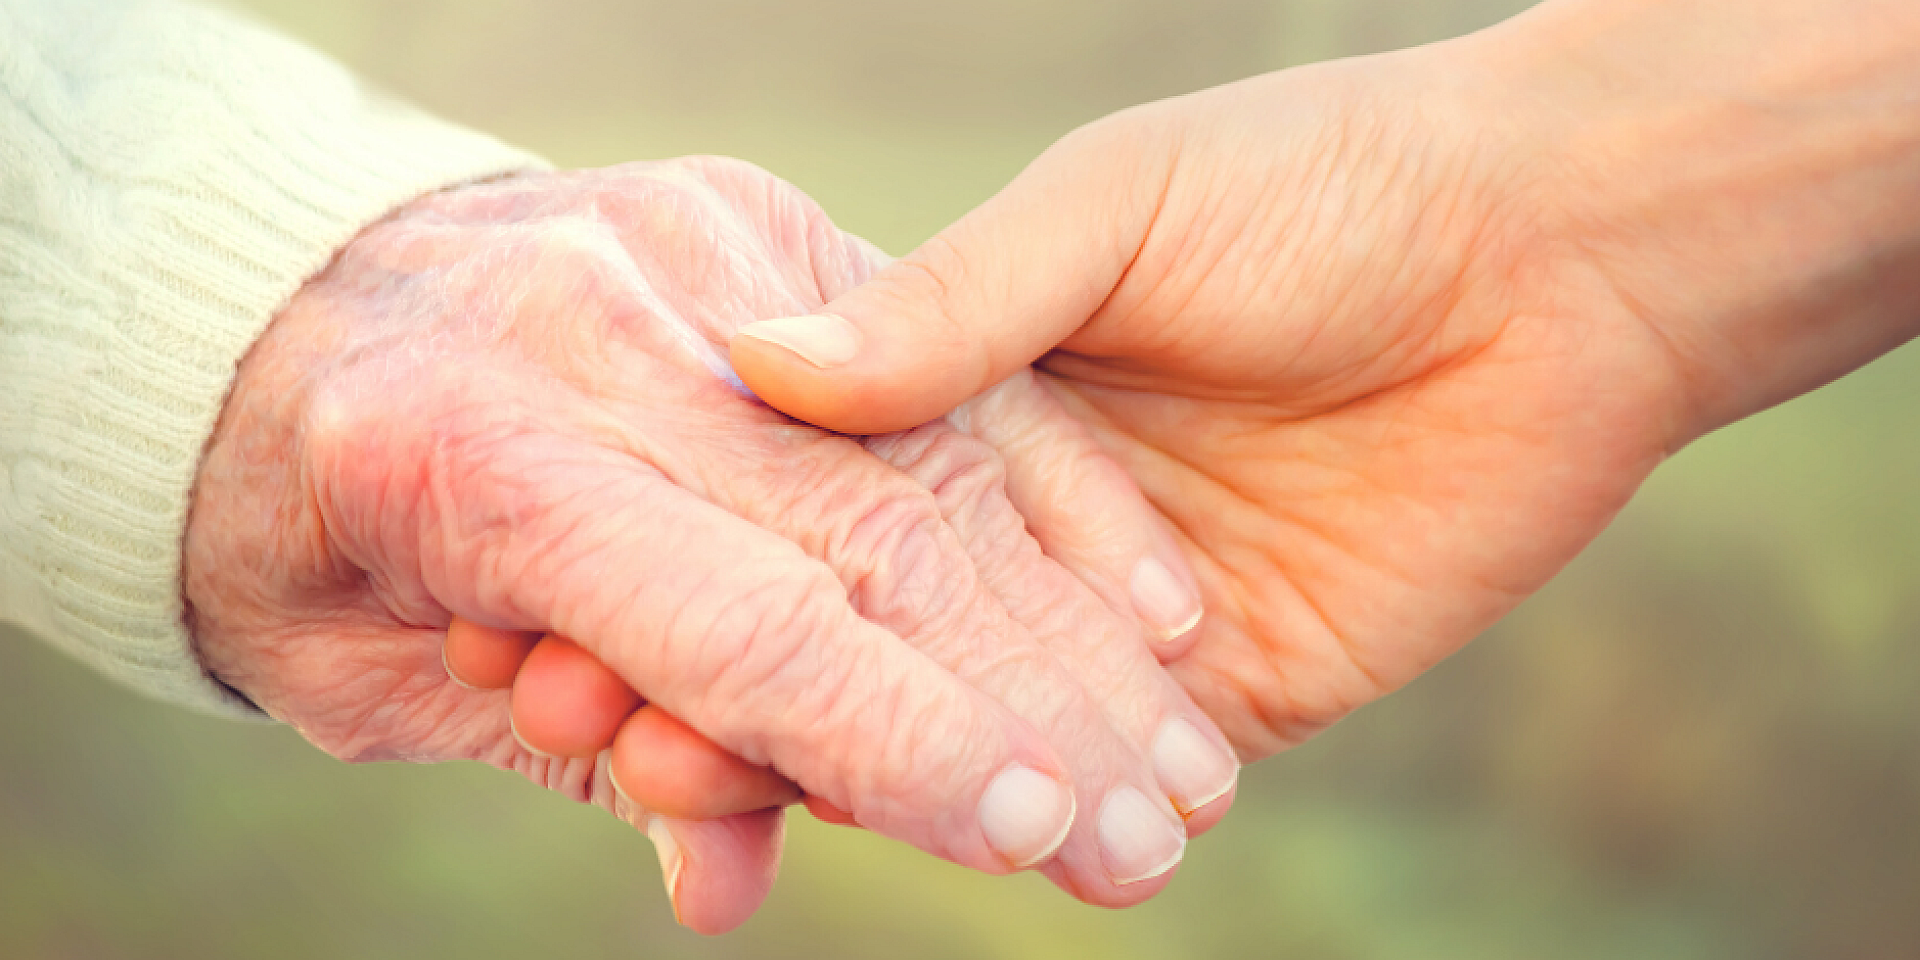 Une jeune personne et une personne âgée se tenant la main